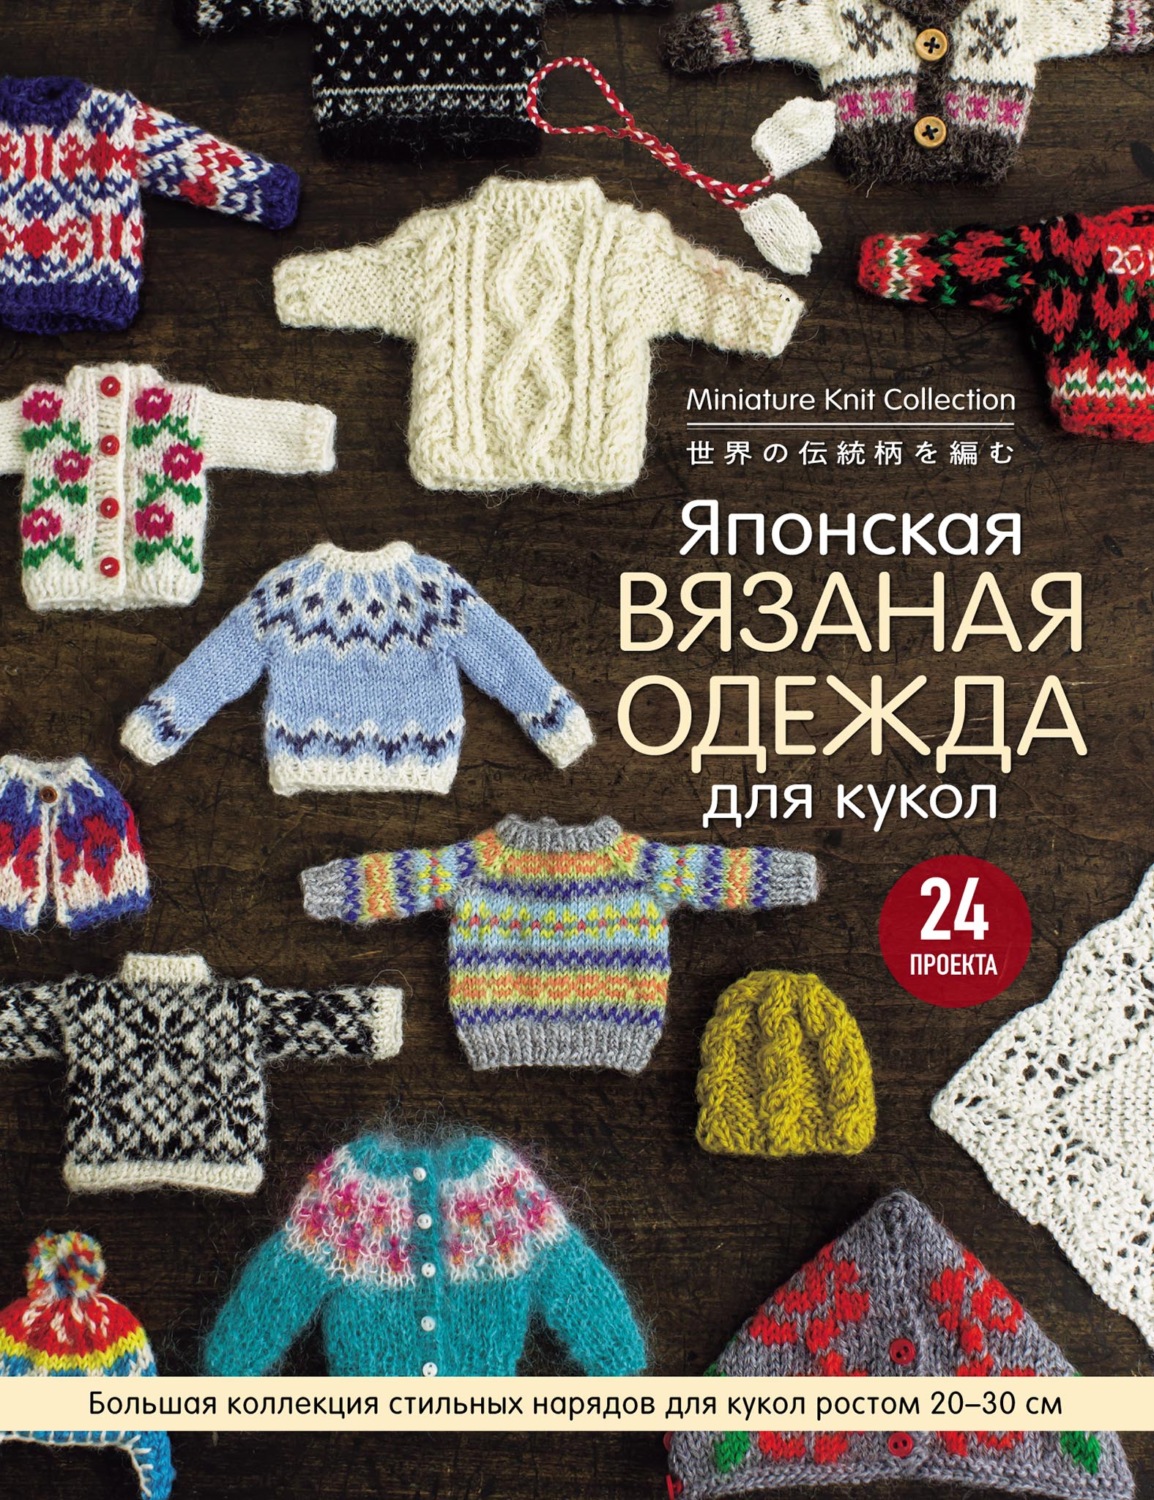 схема вязания детского пальто крючком - 10 Мая - Детская одежда, как, где и куда